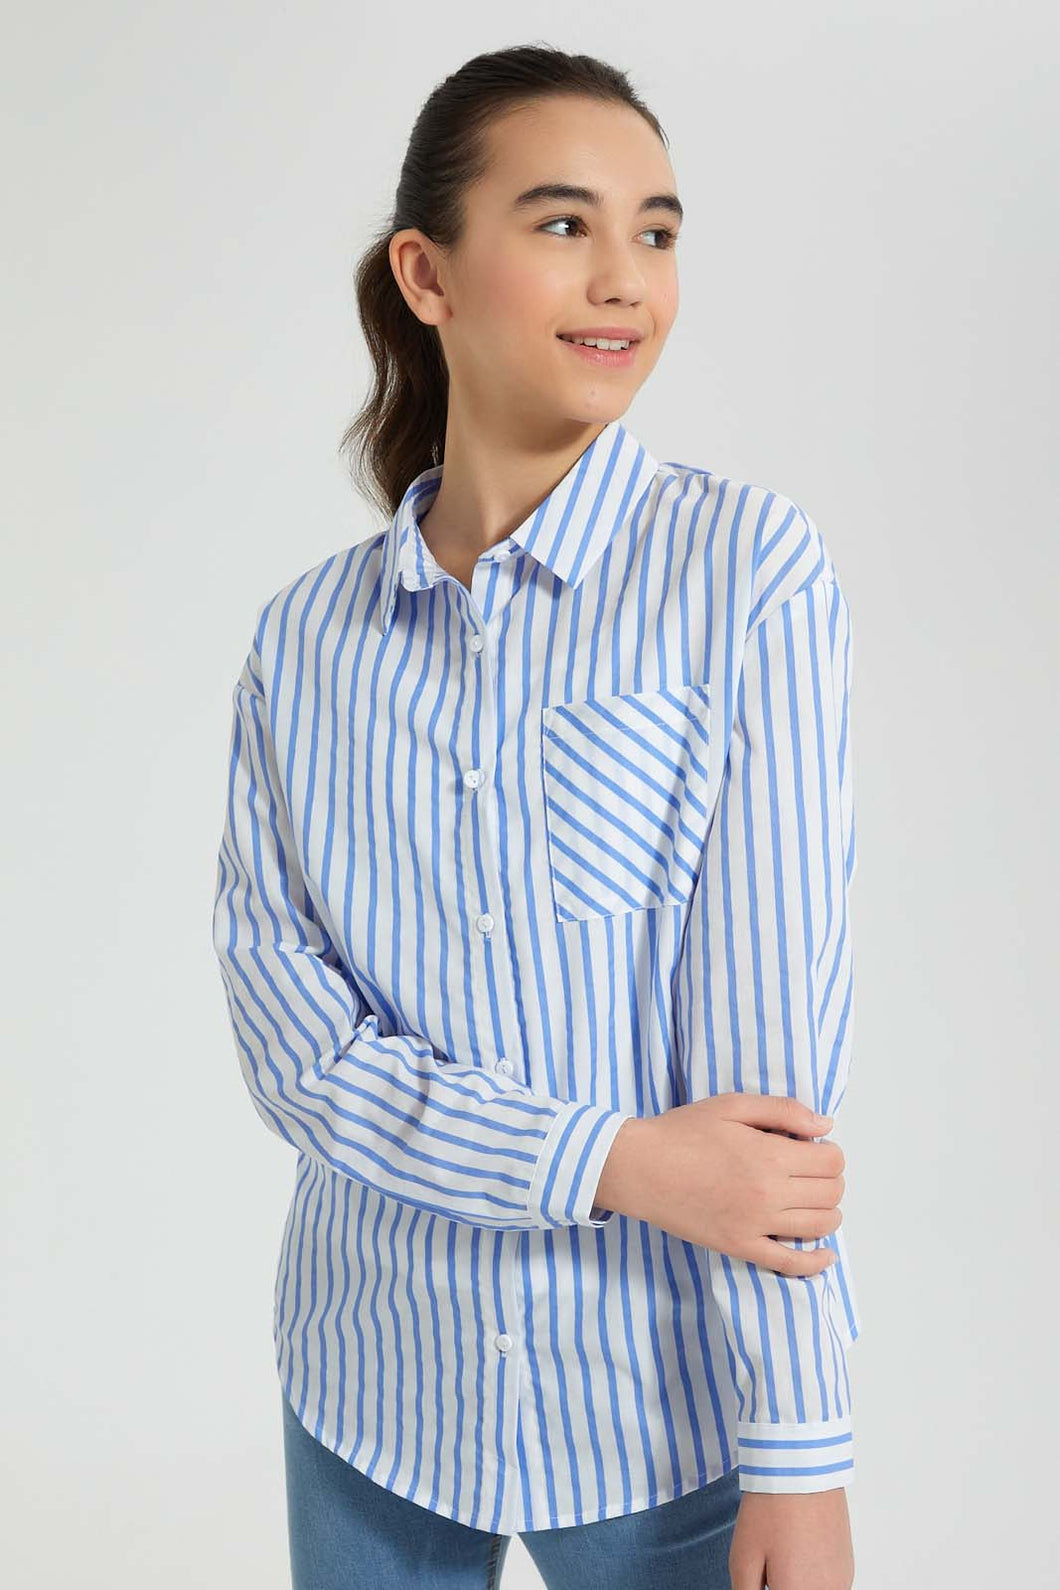 Redtag-White/Blue-Stripes-Twofer-Shirt-Blouses-Senior-Girls-9 to 14 Years